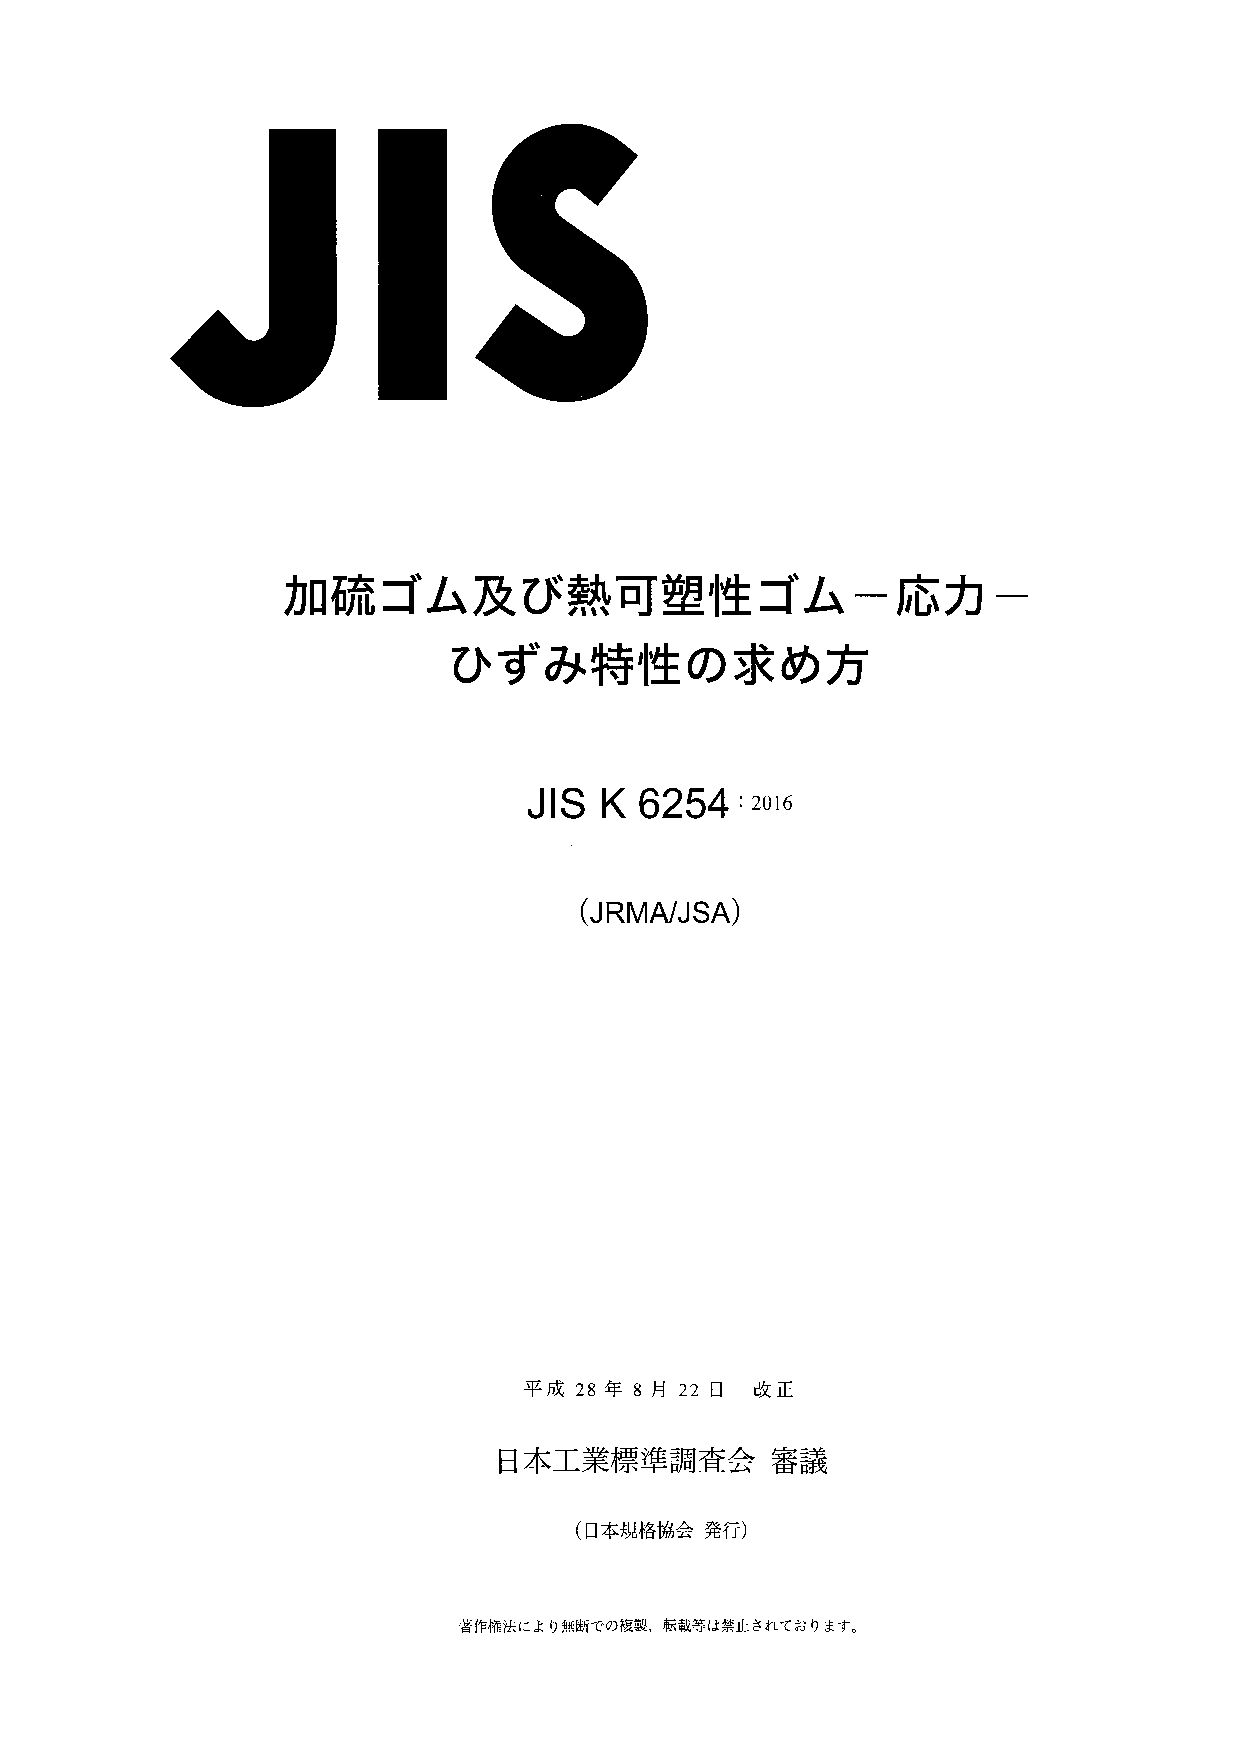 JIS K 6254:2016